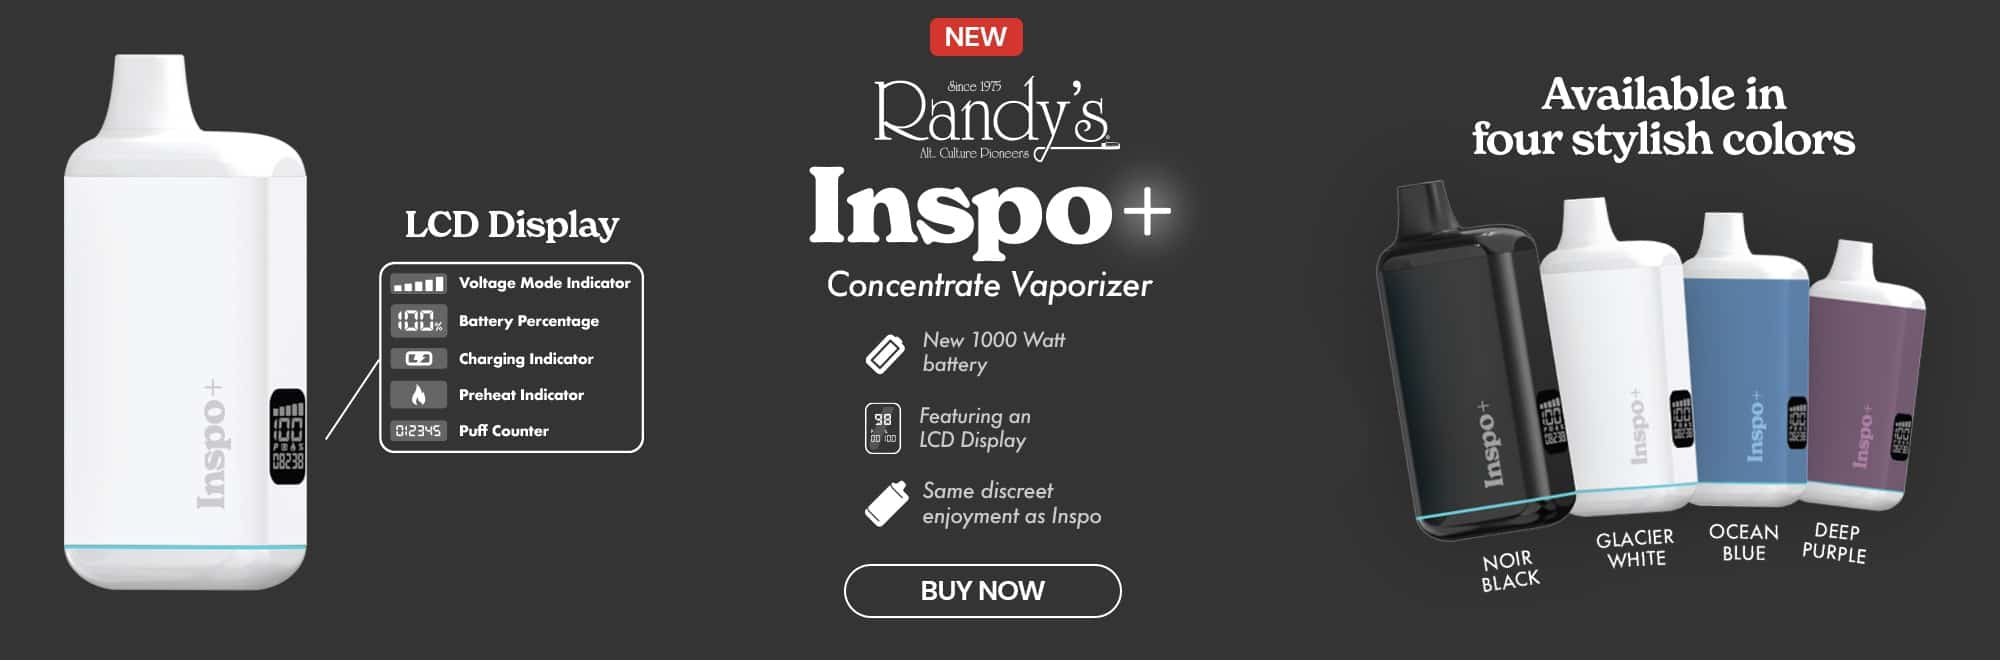 Epic Wholesale - Randy's Inspo+